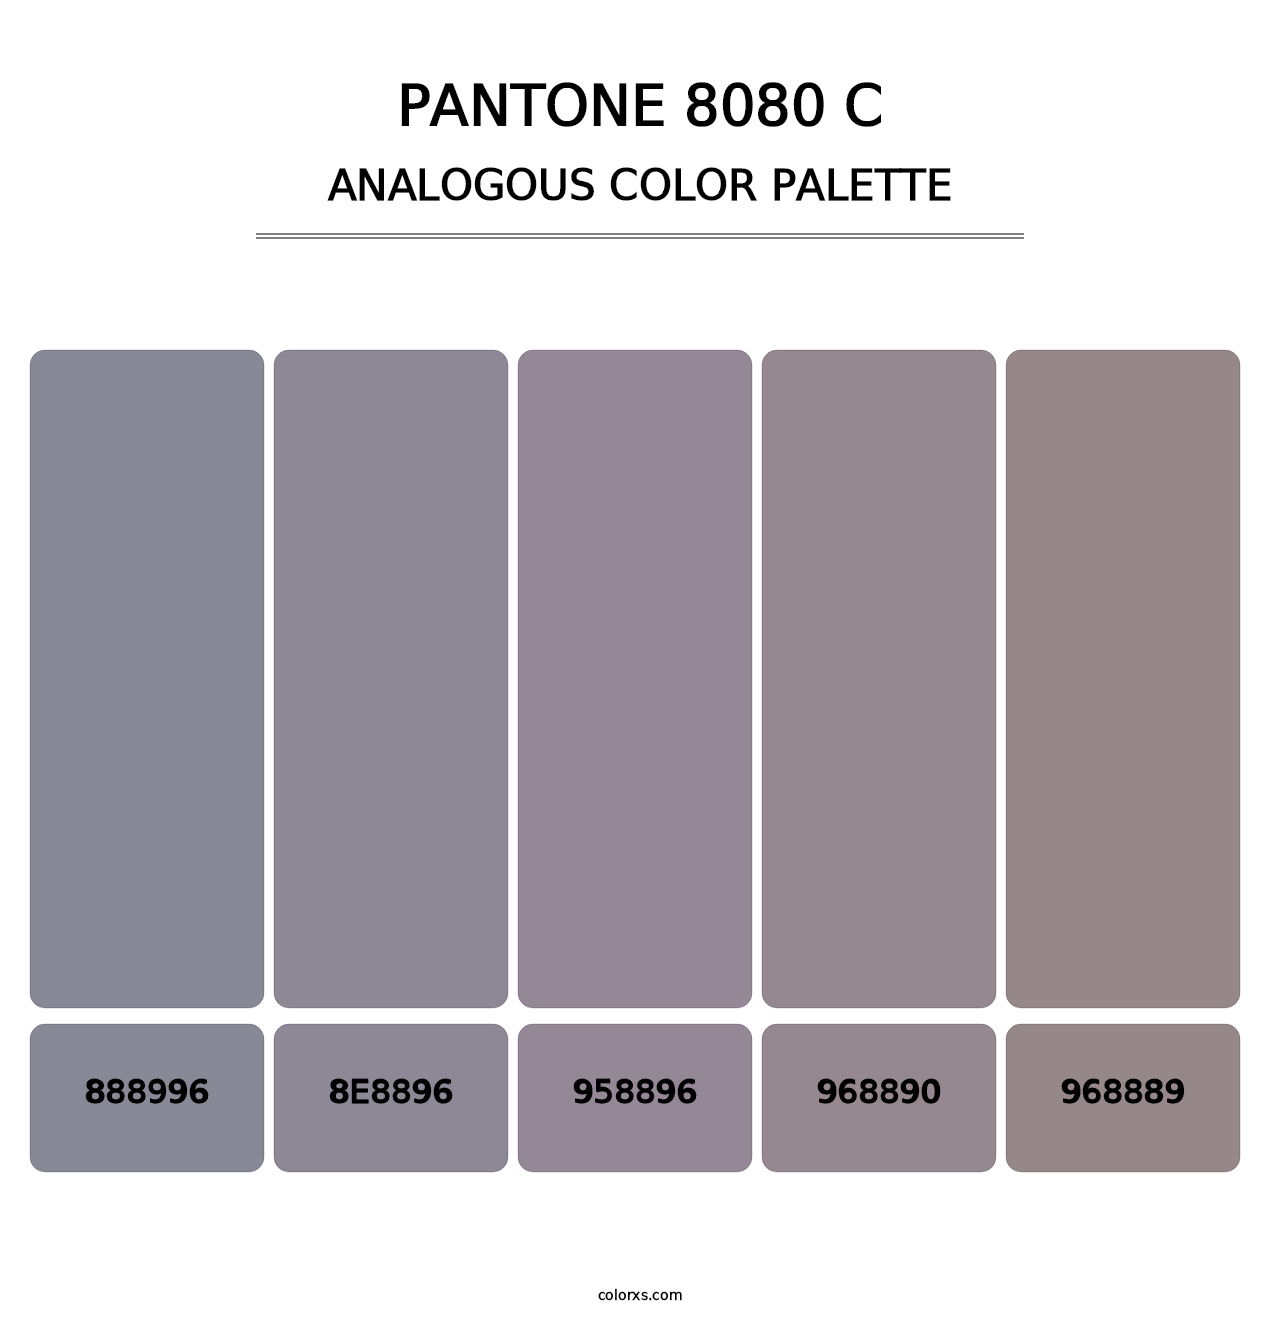 PANTONE 8080 C - Analogous Color Palette